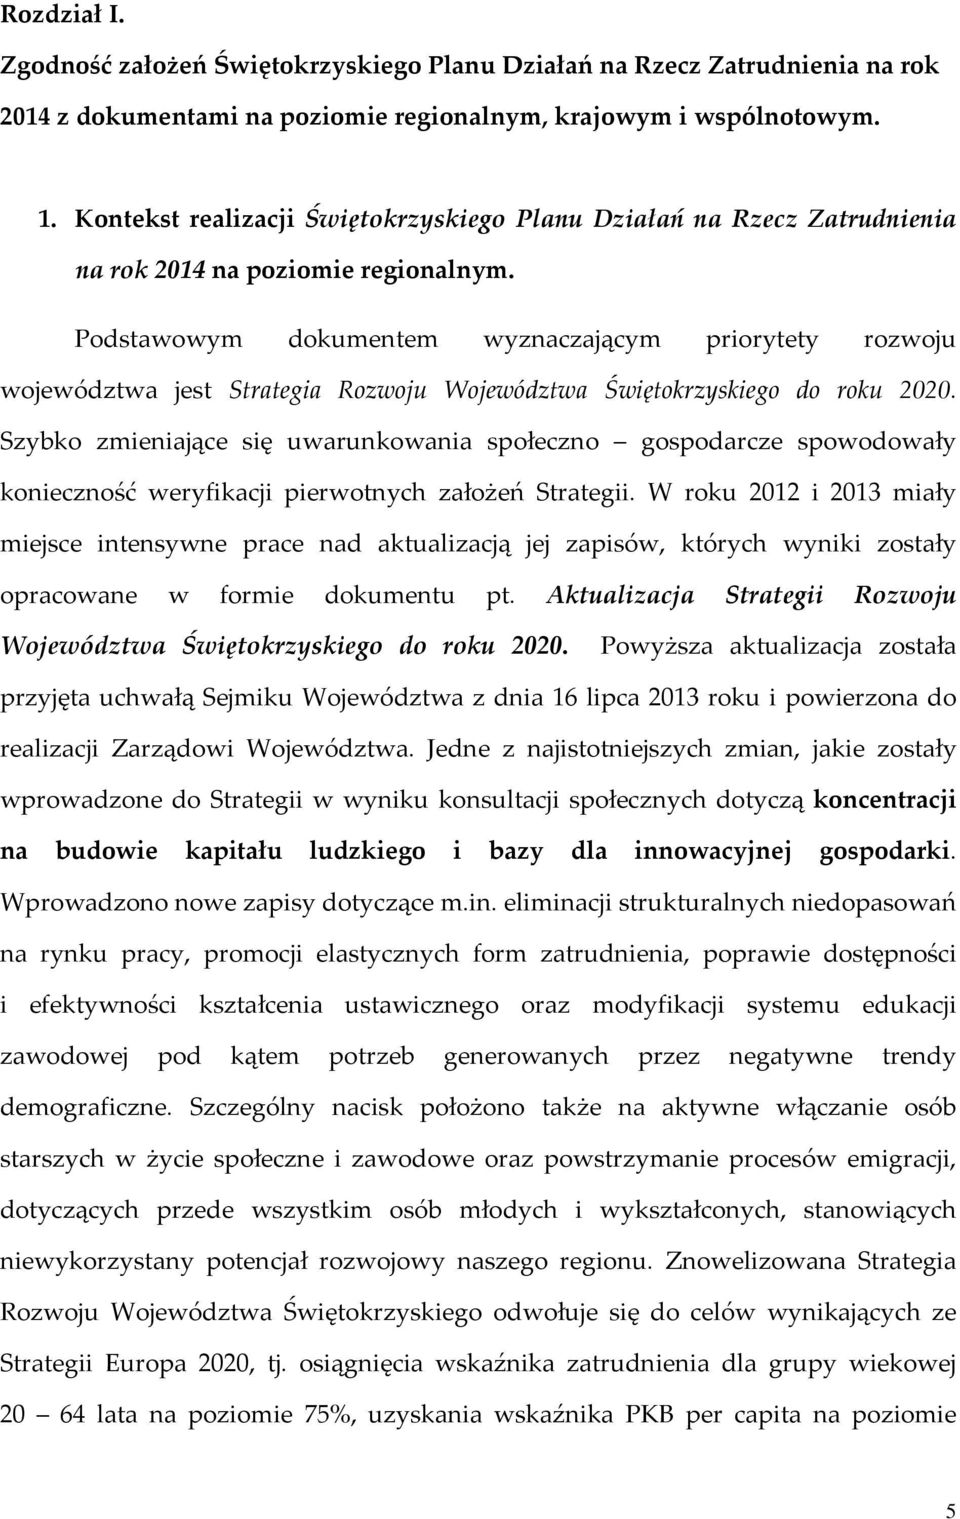 Podstawowym dokumentem wyznaczającym priorytety rozwoju województwa jest Strategia Rozwoju Województwa Świętokrzyskiego do roku 2020.